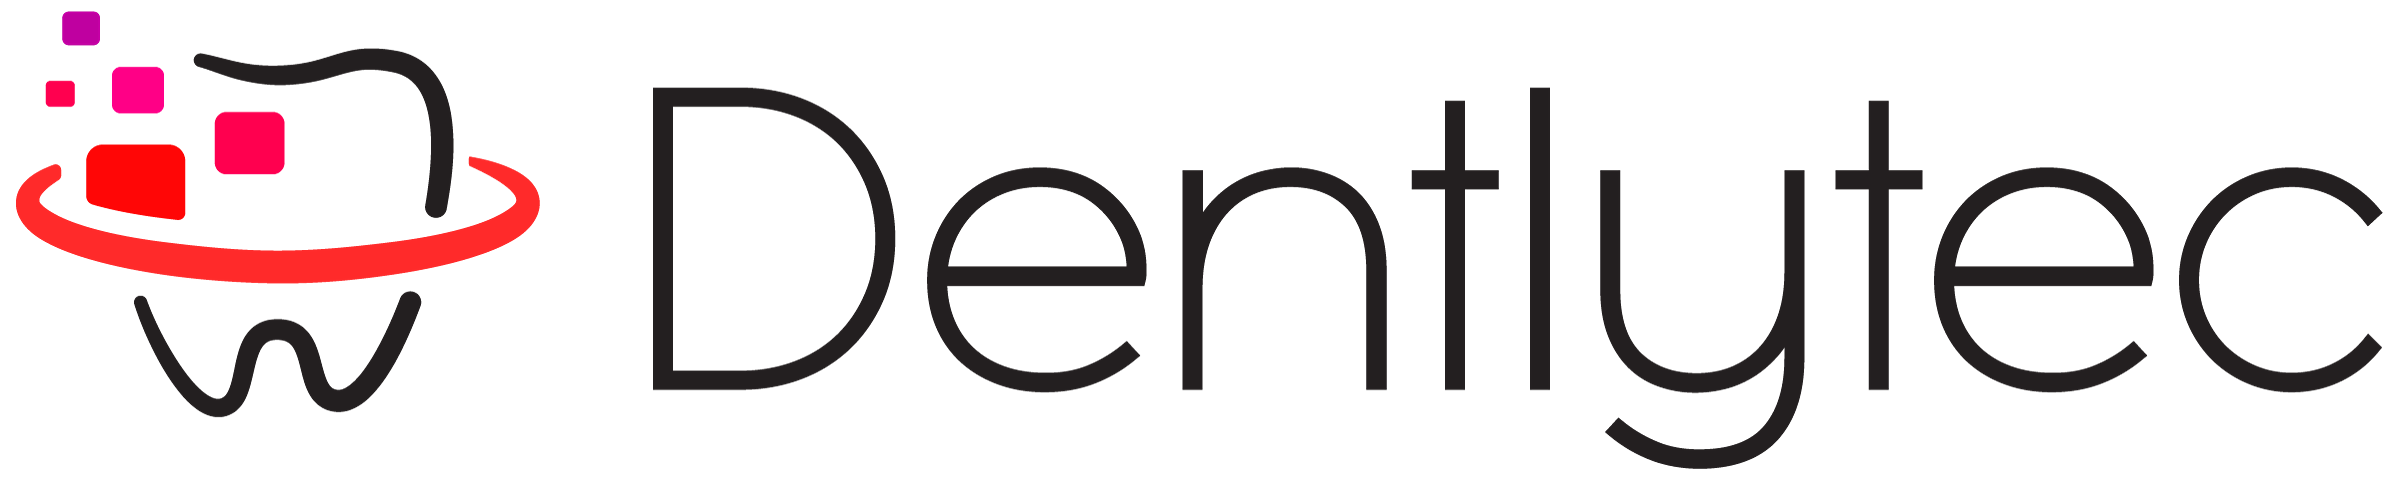 Startup logo